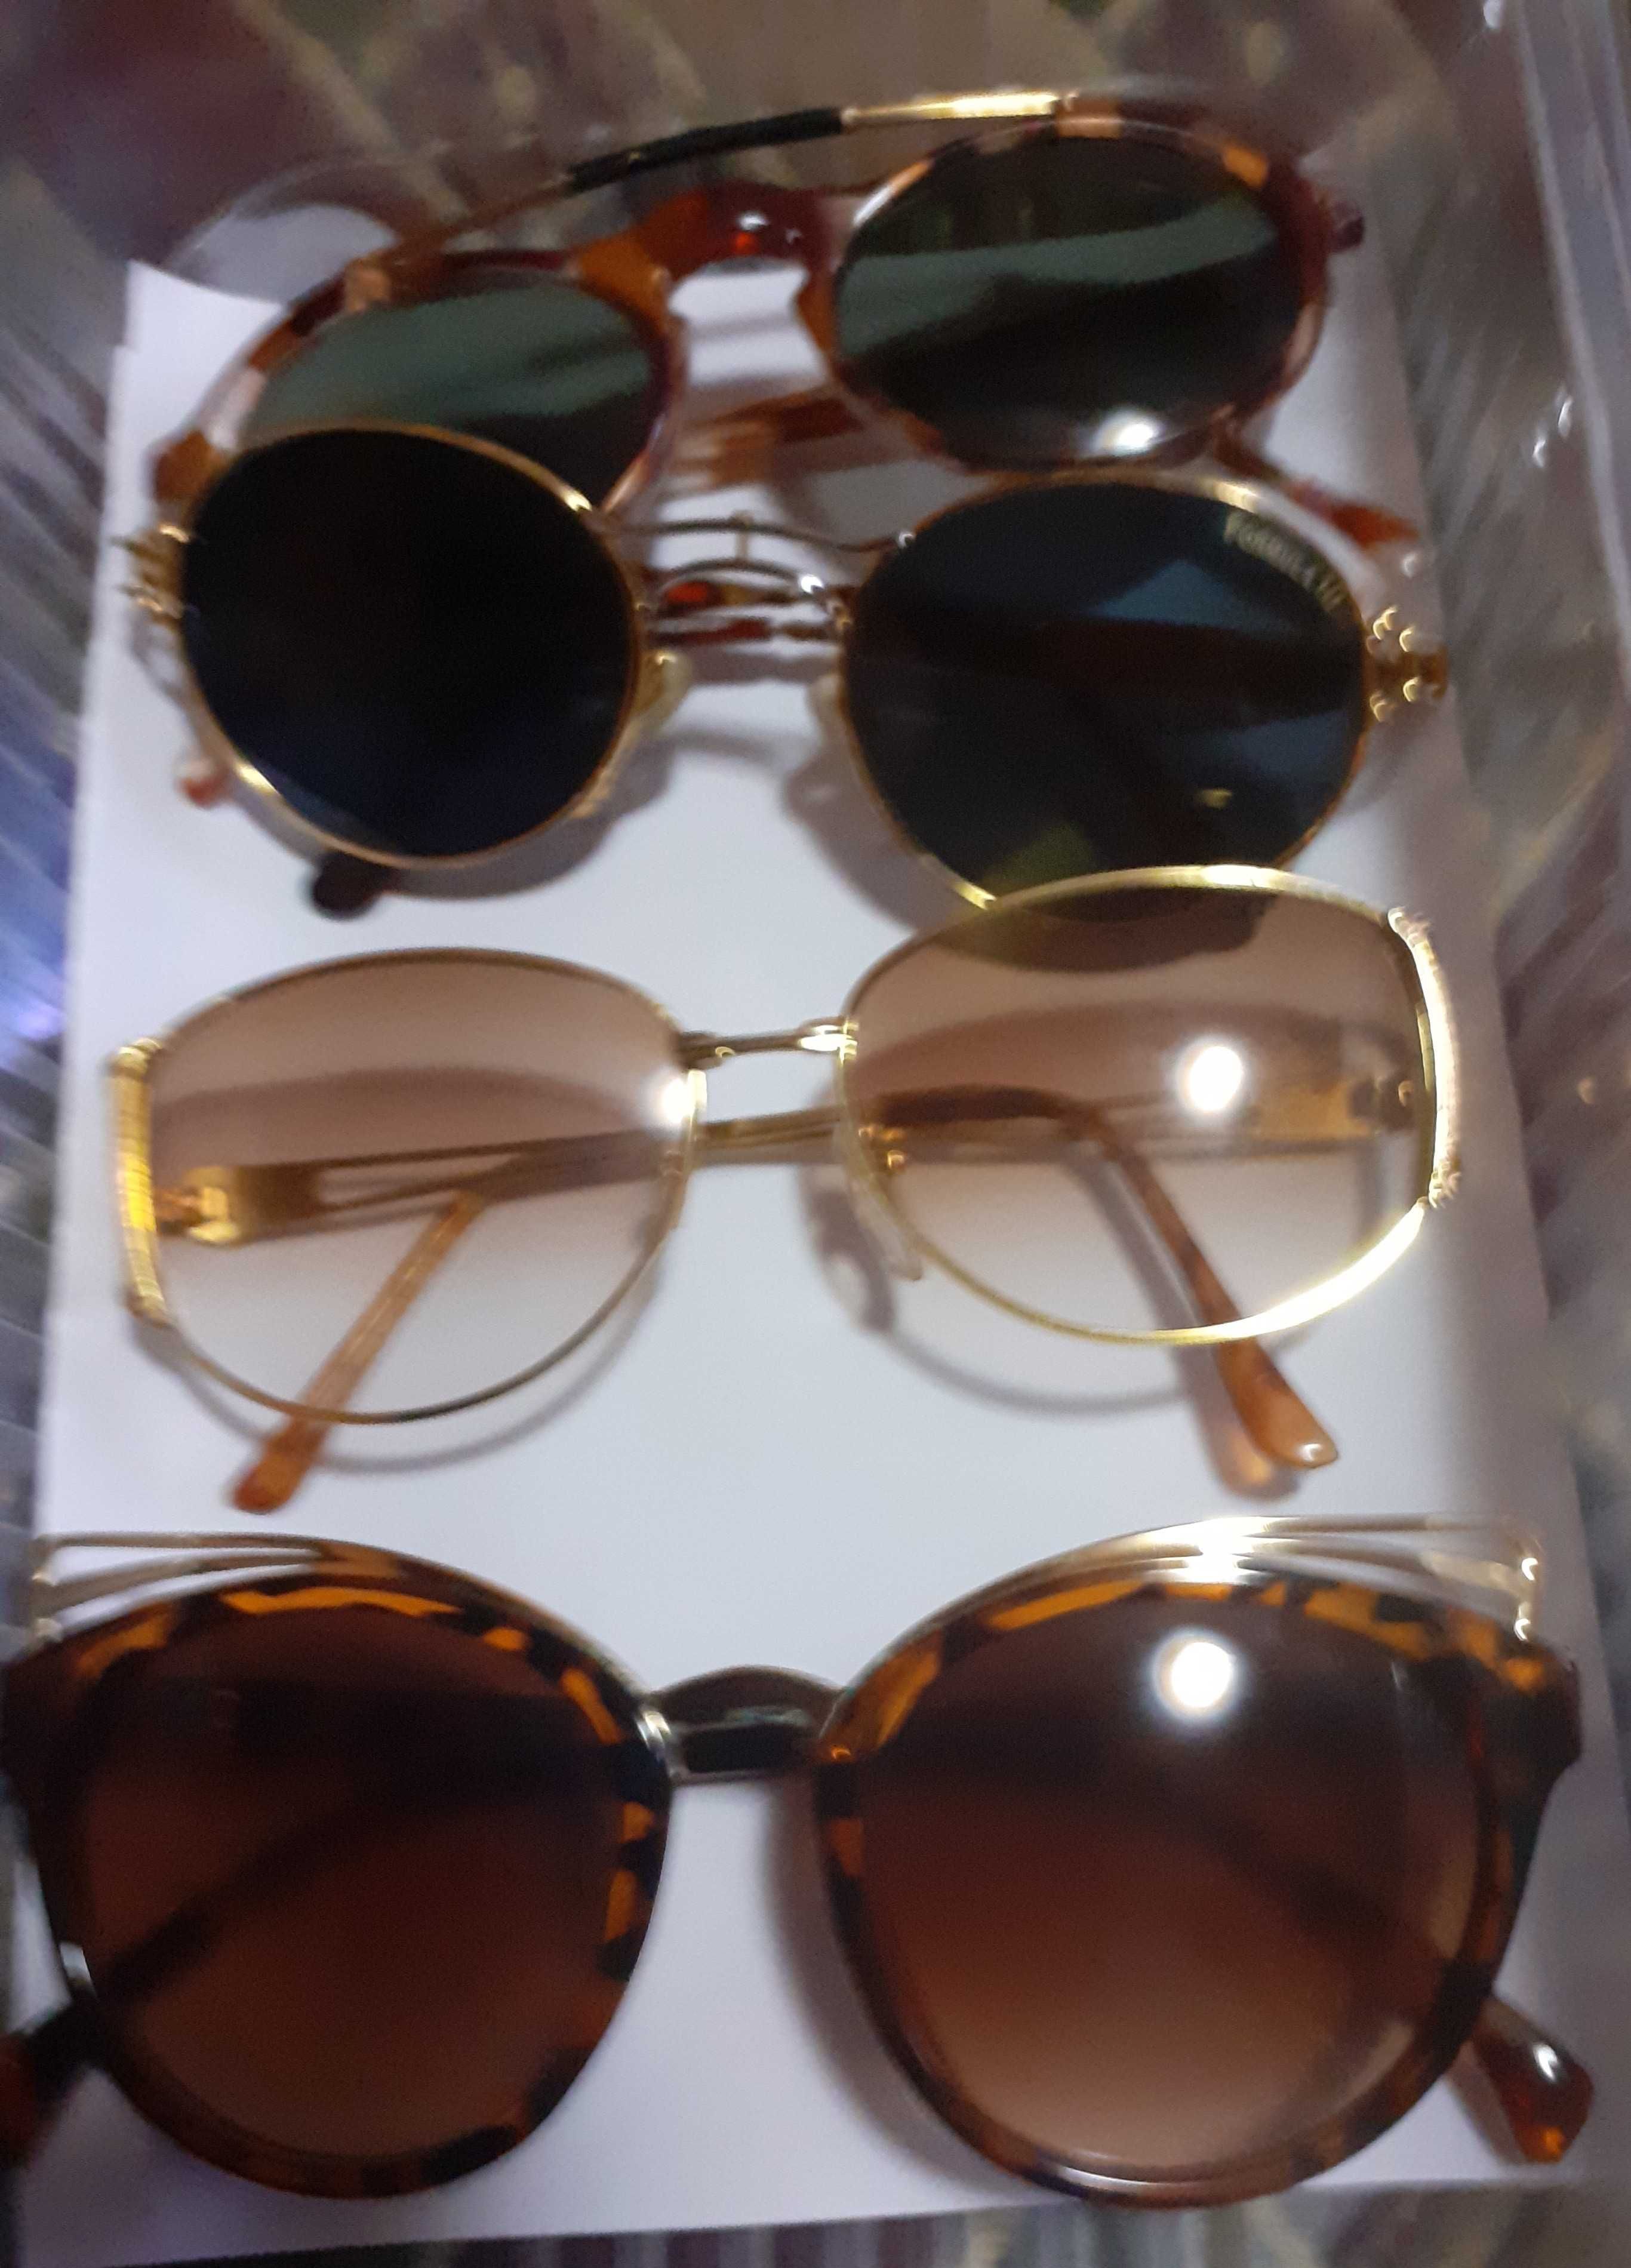 ochelari noi de soare adusi din italia sunt de firma